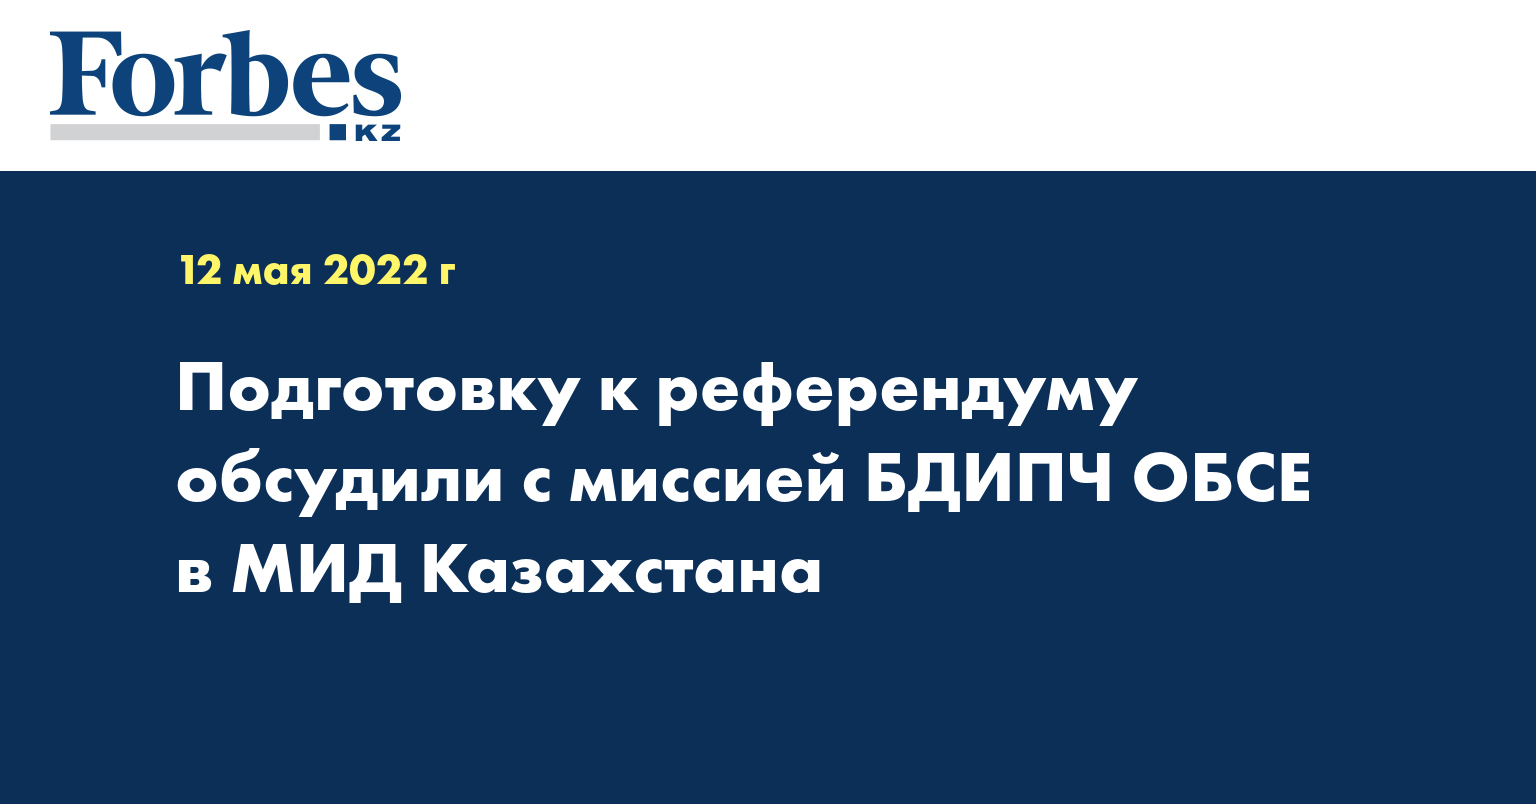 Подготовку к референдуму обсудили с миссией БДИПЧ ОБСЕ в МИД Казахстана